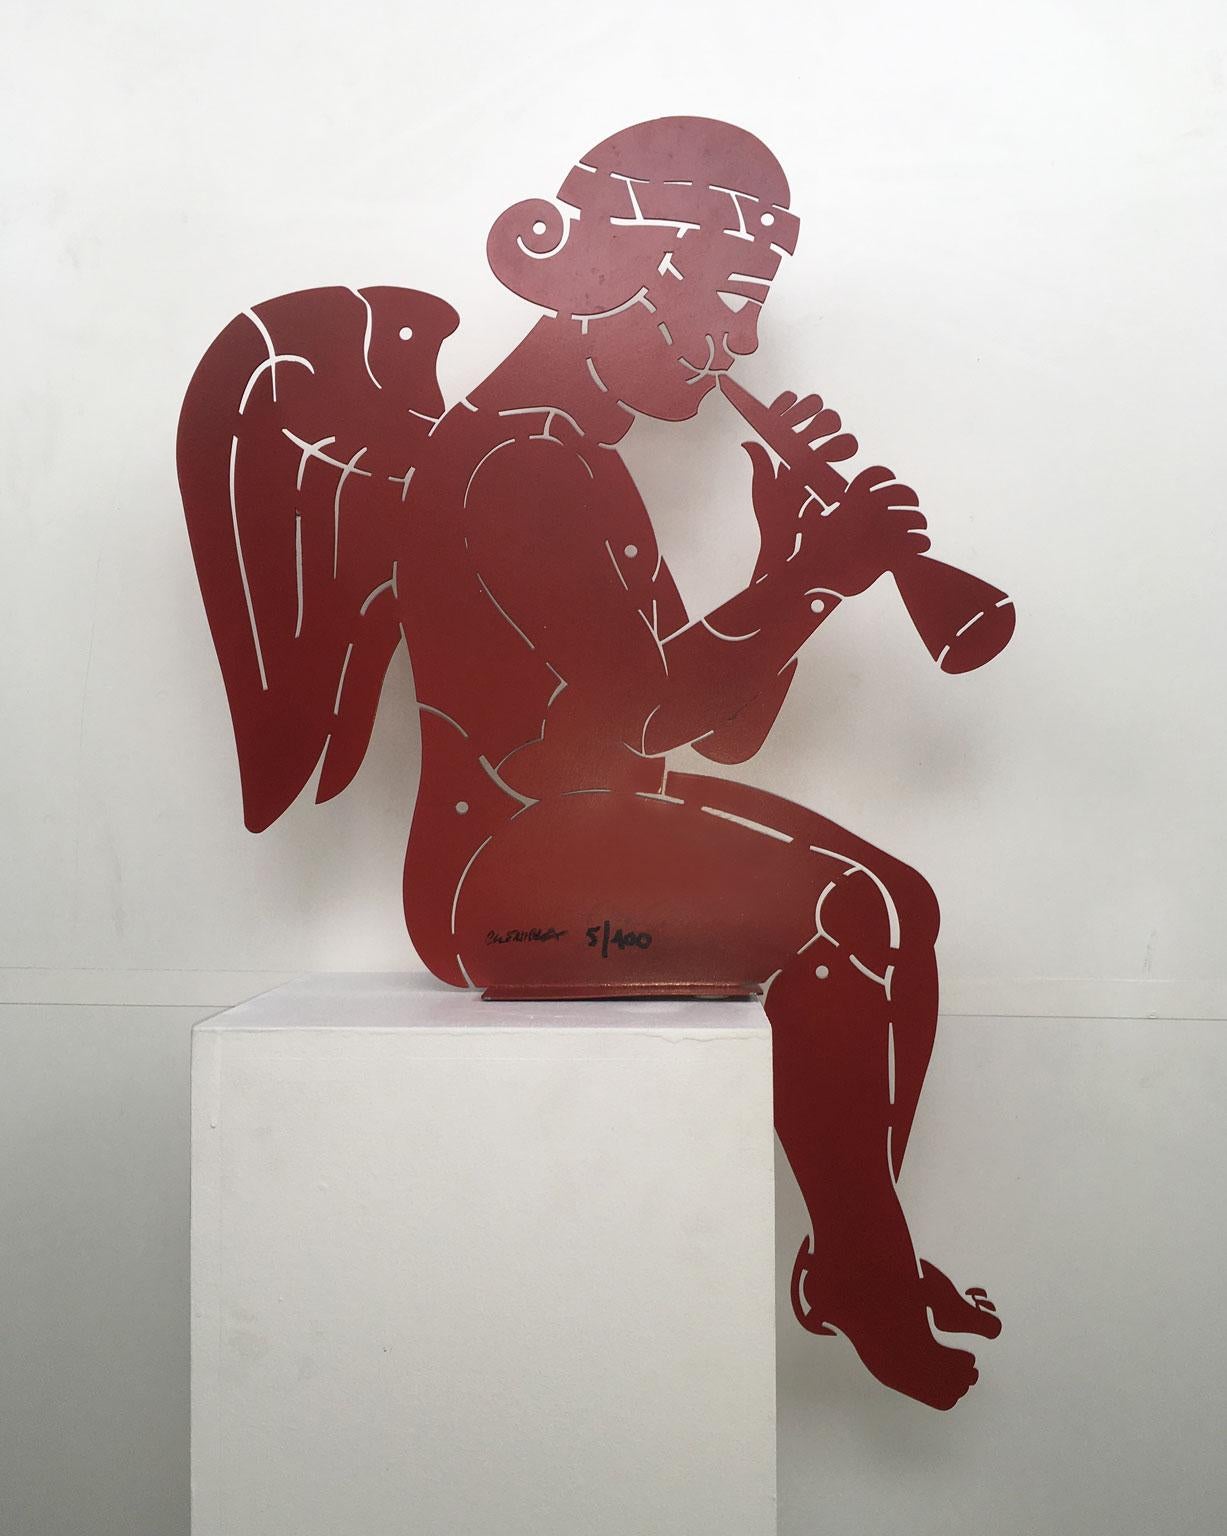 Diese Skulptur ist ein Multiple 1 von 50 Stück, das 1980 von dem bekannten Künstler Bruno Chersicla realisiert wurde.
Alle Werke sind nummeriert und vom Künstler signiert und werden durch das Zertifikat des Künstlers und des Redakteurs, der die